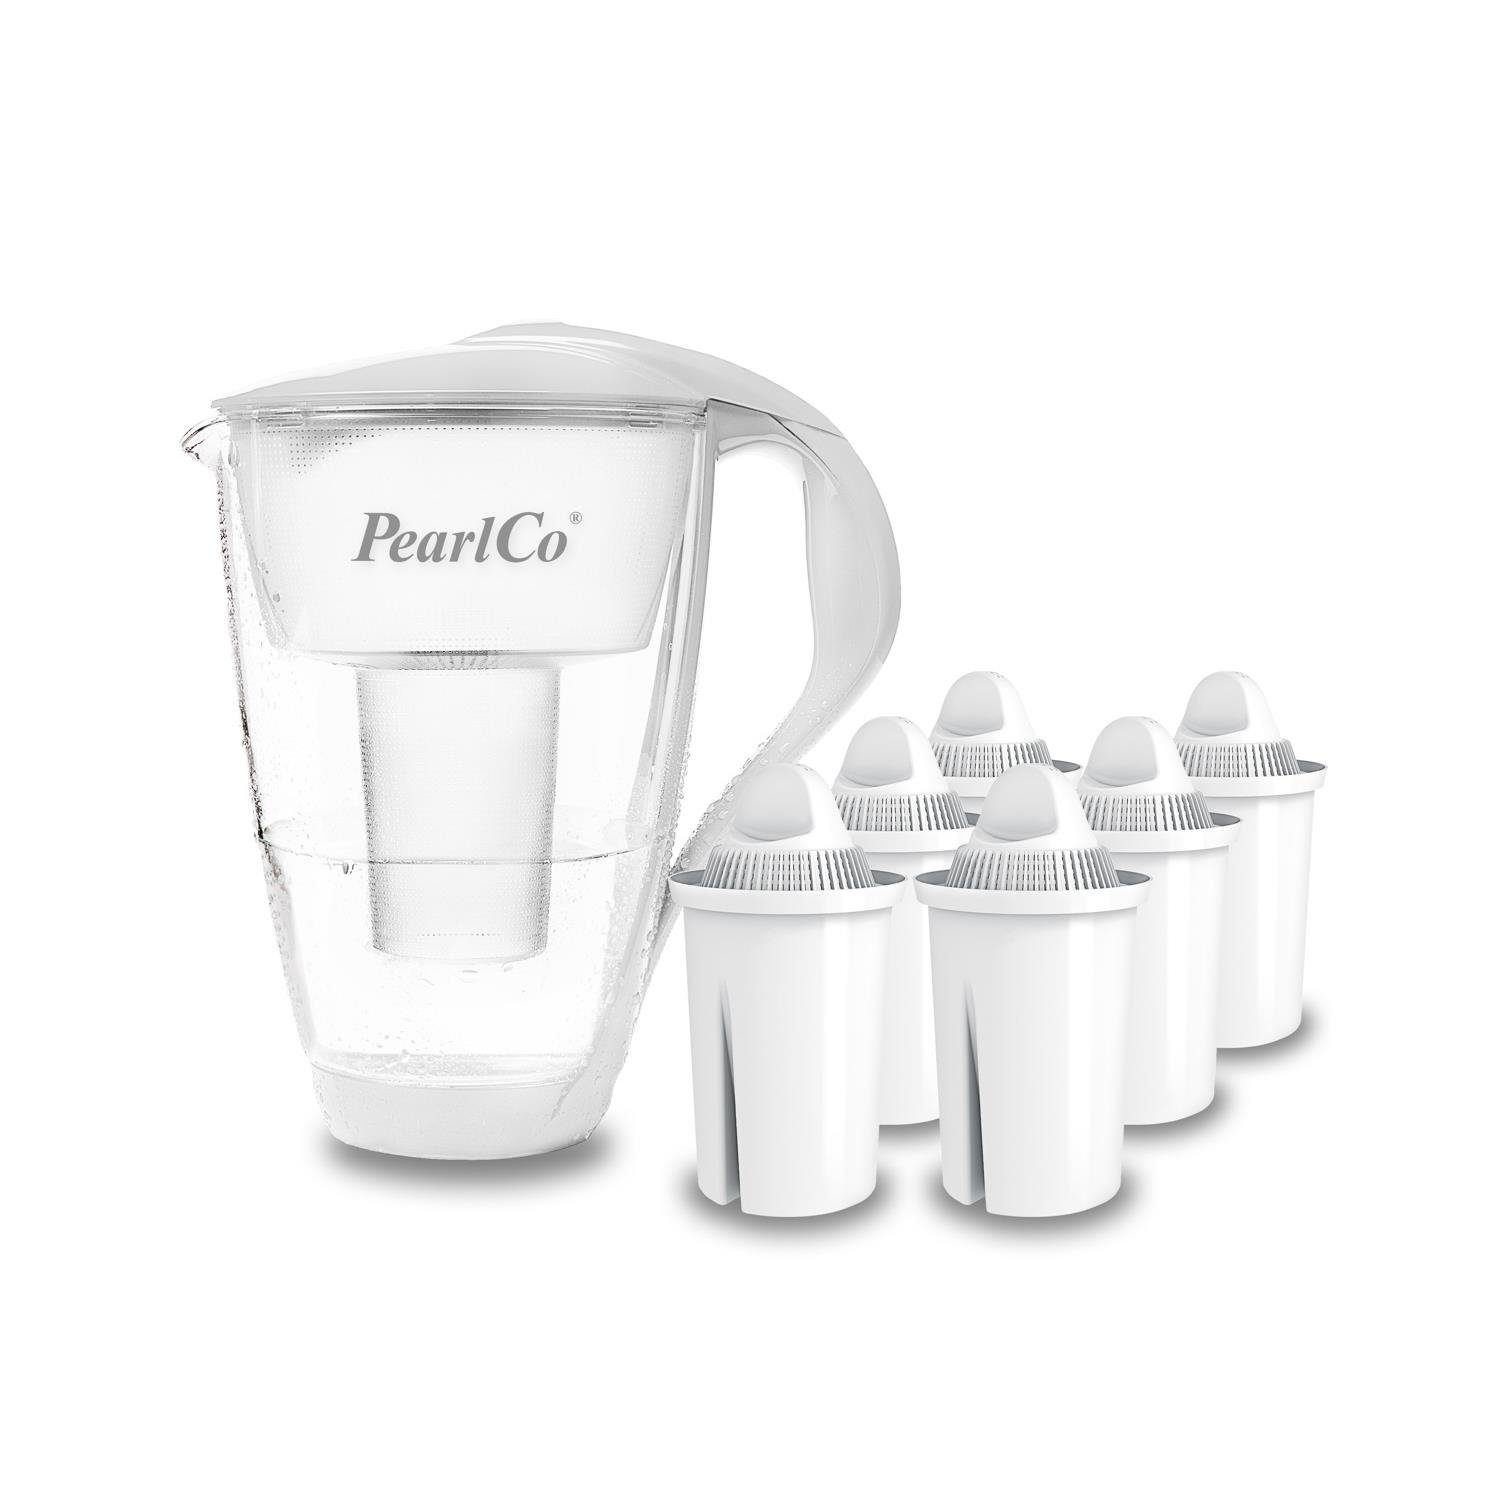 PearlCo Wasserfilter Glas Inkl. 6 Filterkartuschen, Zubehör für Brita  Classic u. PearlCo Classic online kaufen | OTTO